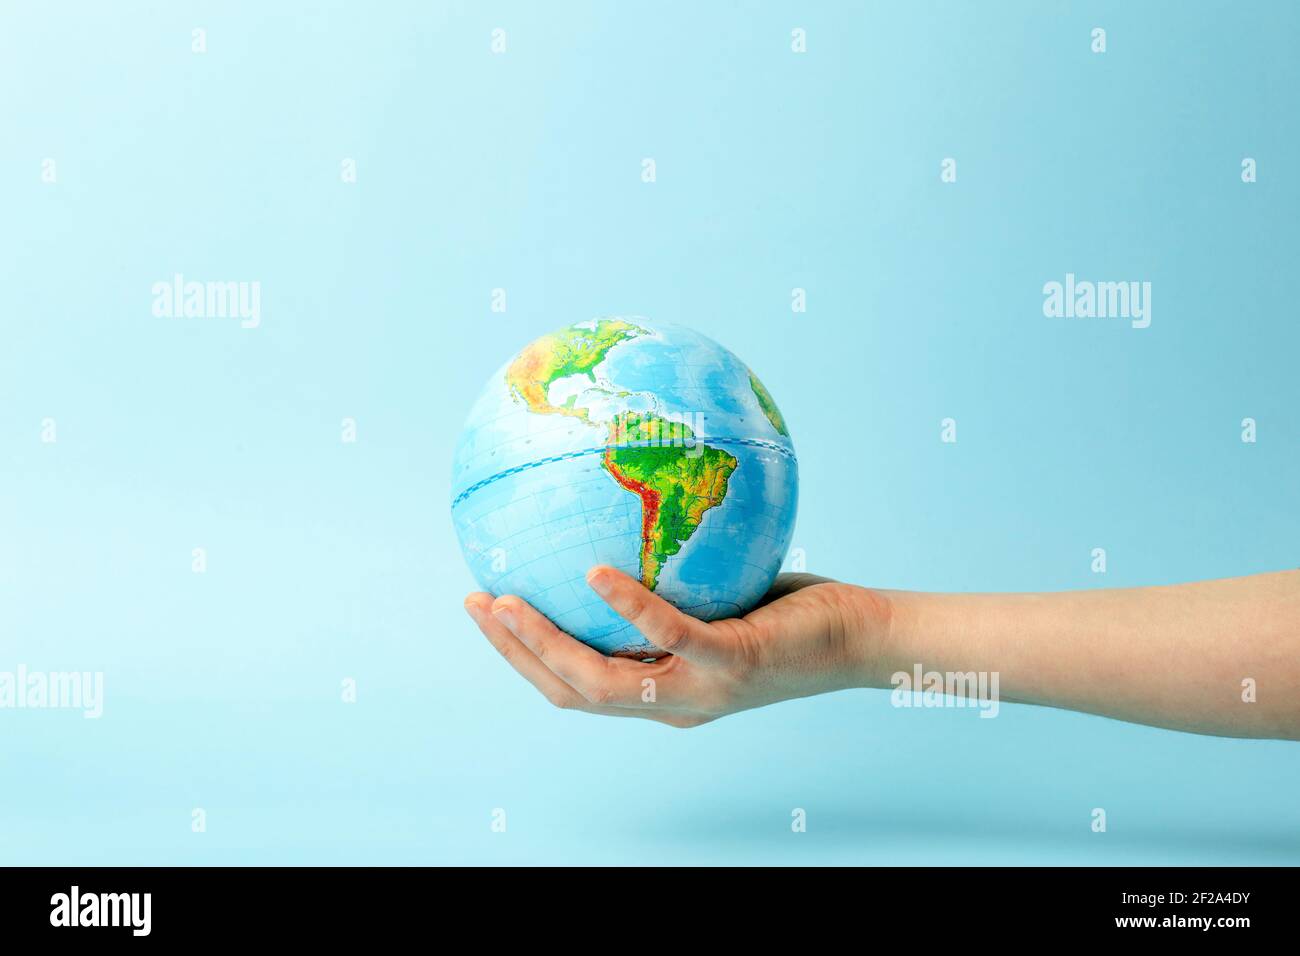 Globe terrestre dans les mains sur un fond bleu propre. Le concept de protection de la nature, de l'écologie et de la paix mondiale. Photo de haute qualité Banque D'Images